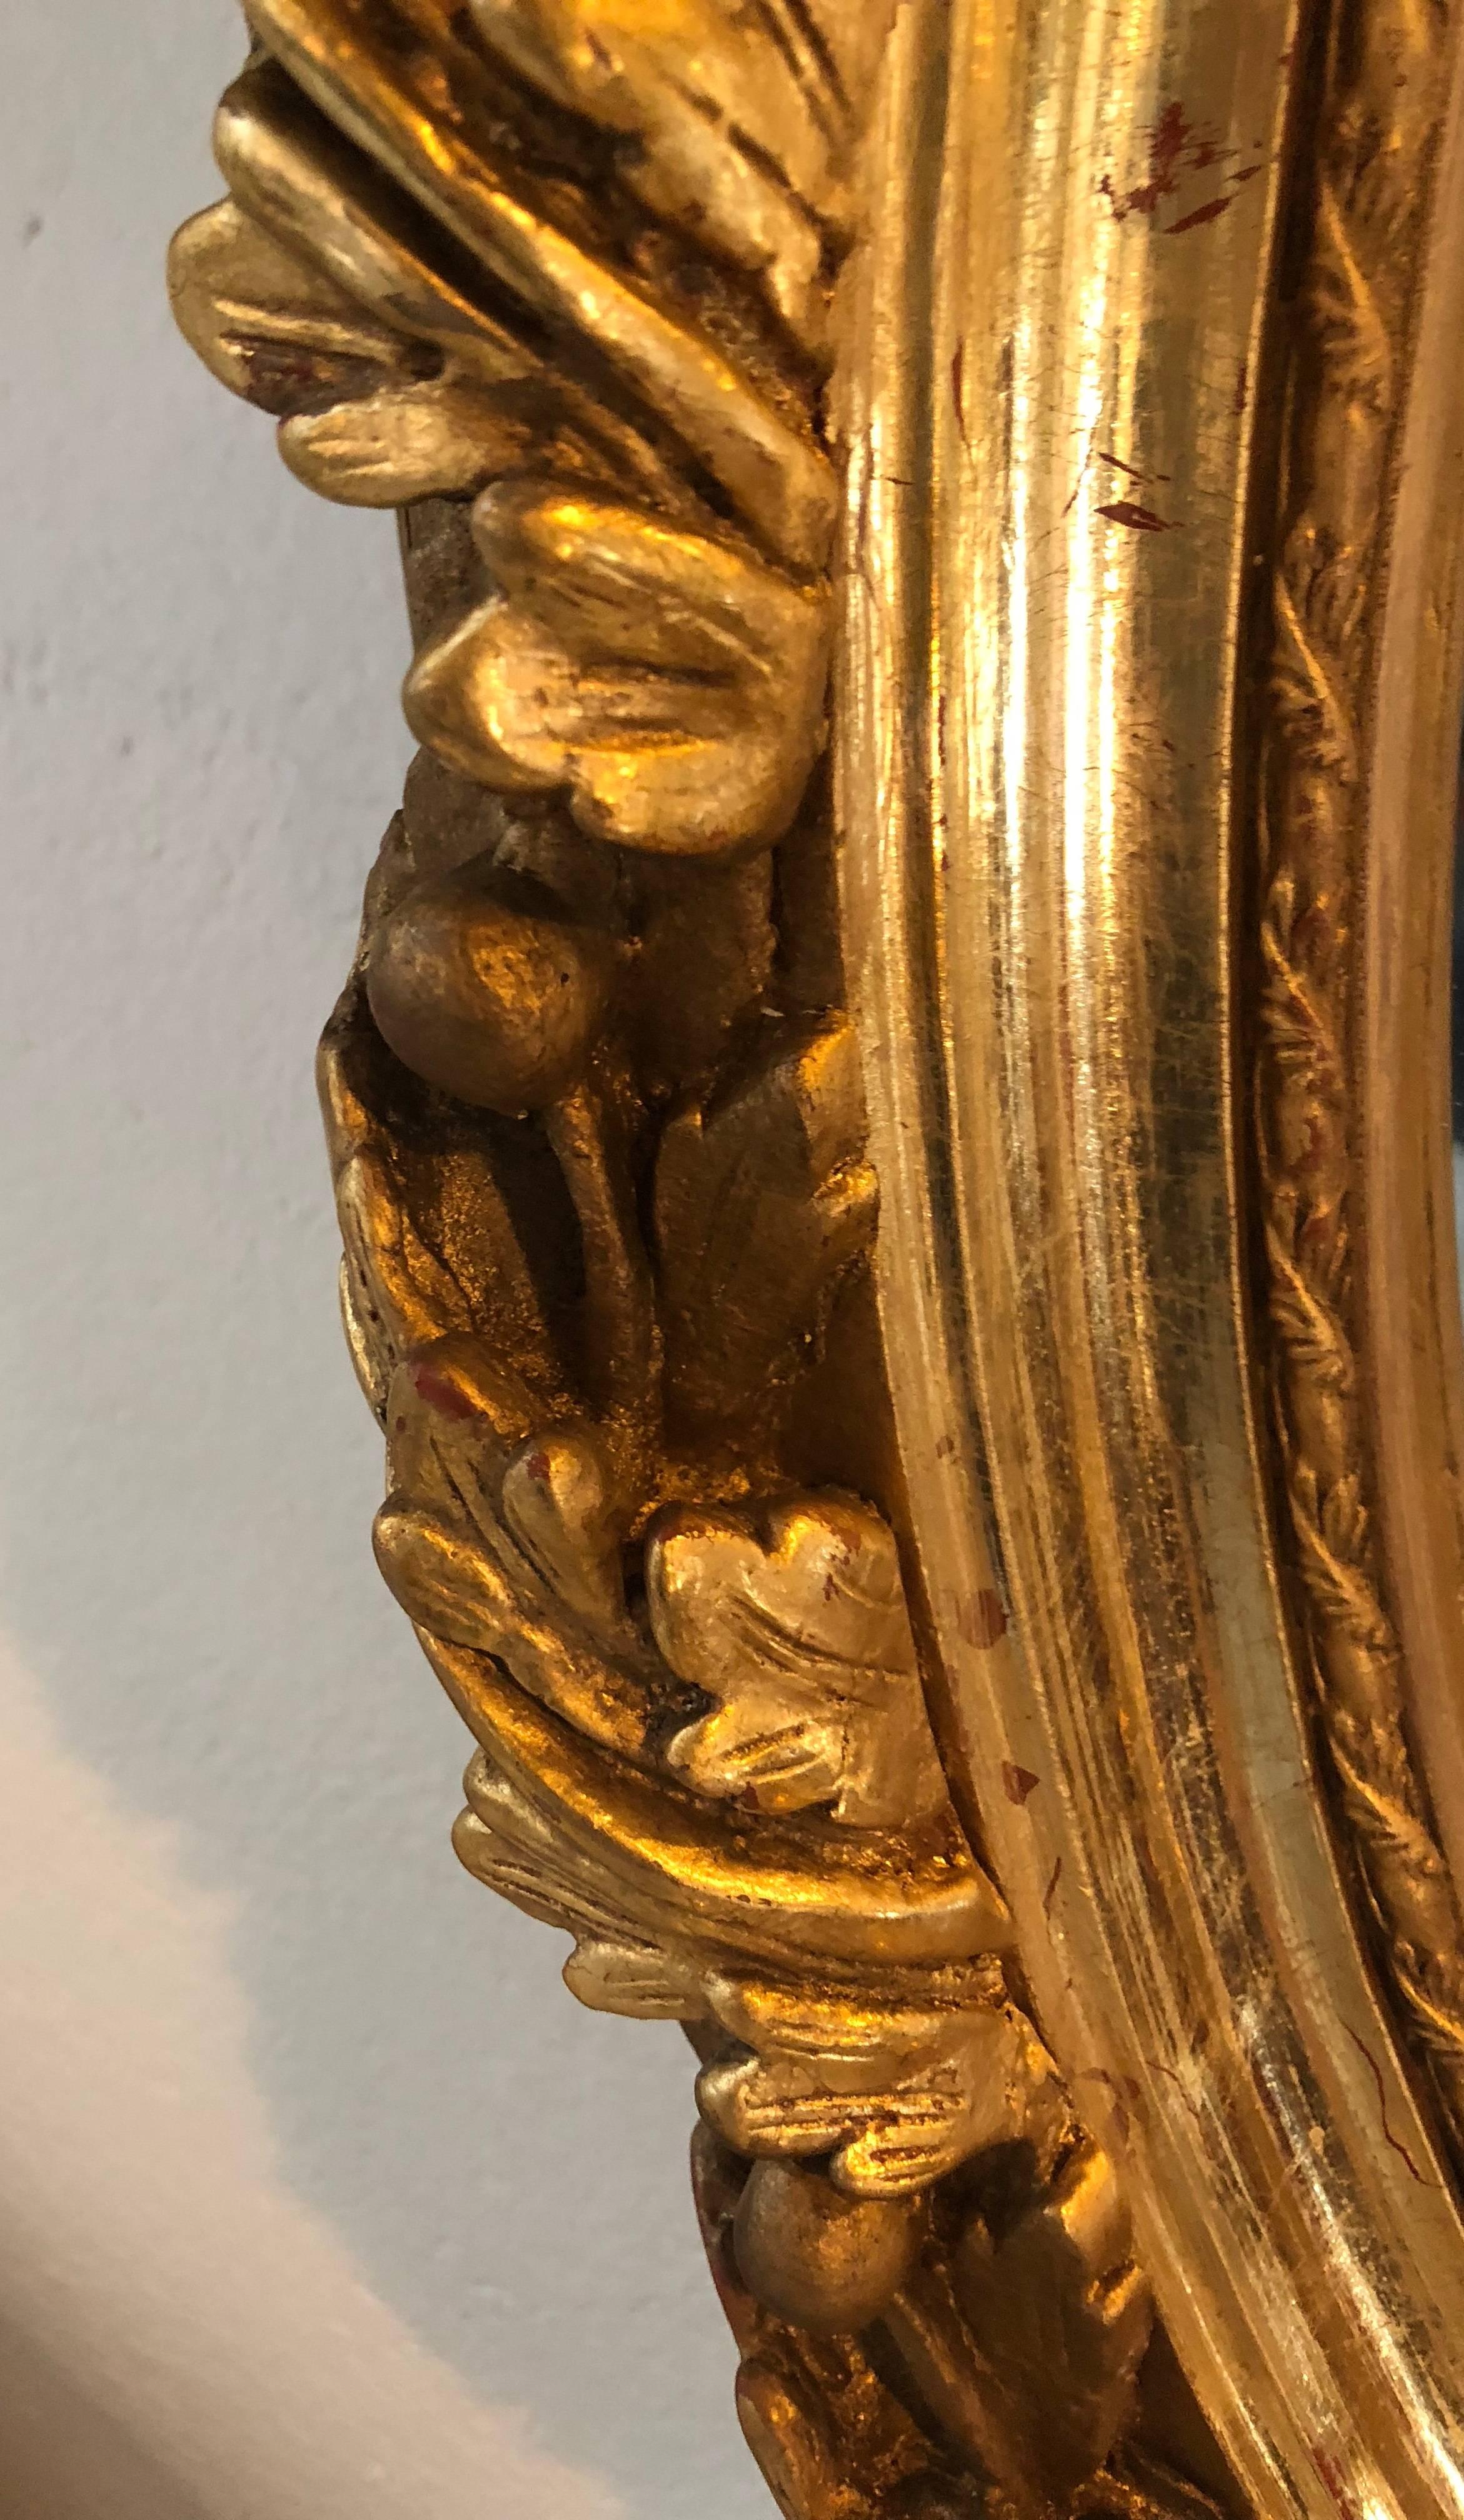 Paire de miroirs muraux ou de consoles de style Louis XVI en bois sculpté et en gesso, avec de fines sculptures de rubans et de glands. Chacun possède un miroir ovale à biseau d'un pouce dans un cadre finement sculpté de roses, de rubans et de